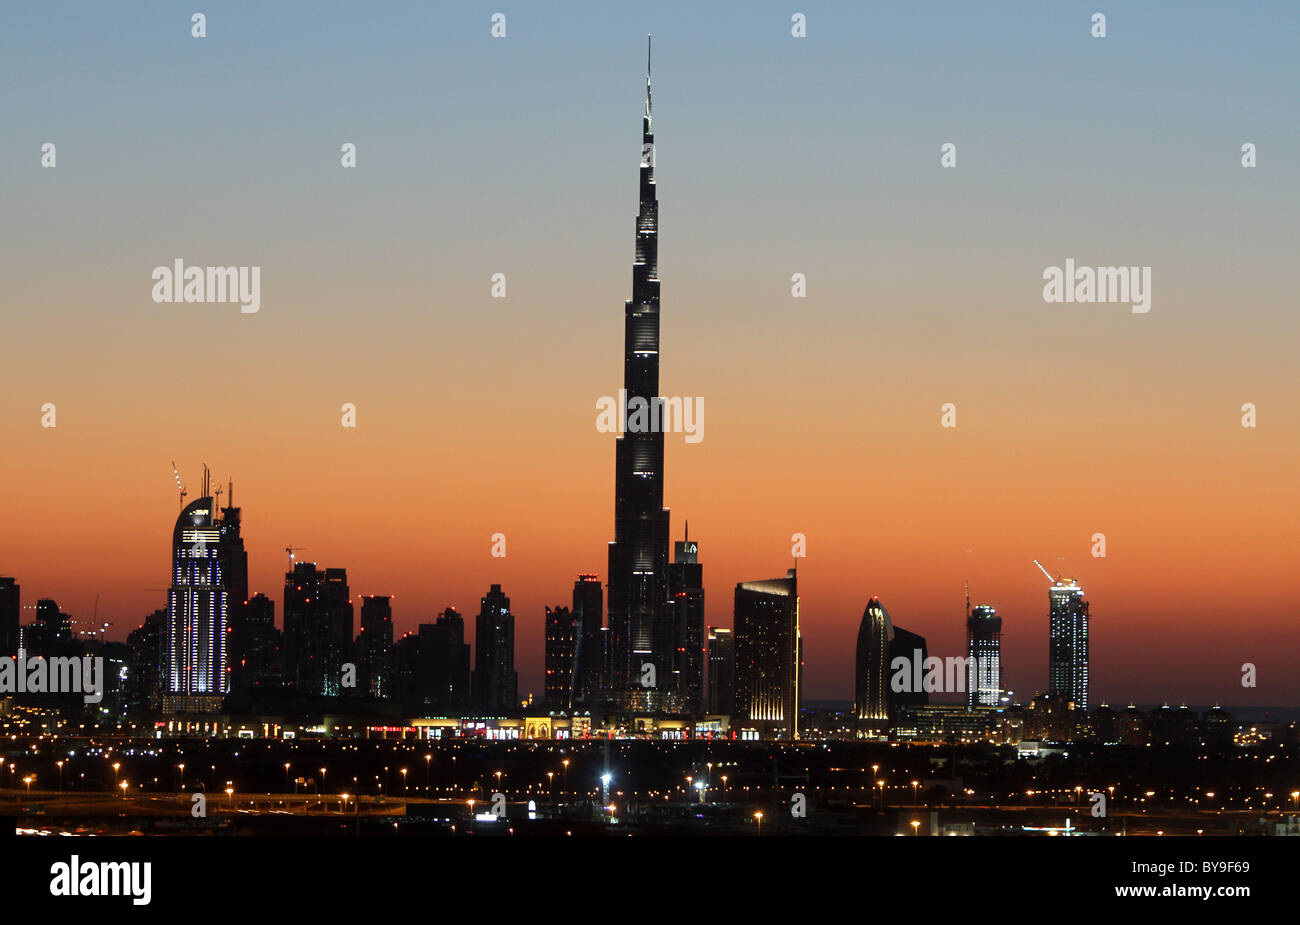 Dubai's Skyline at sunset Stock Photo